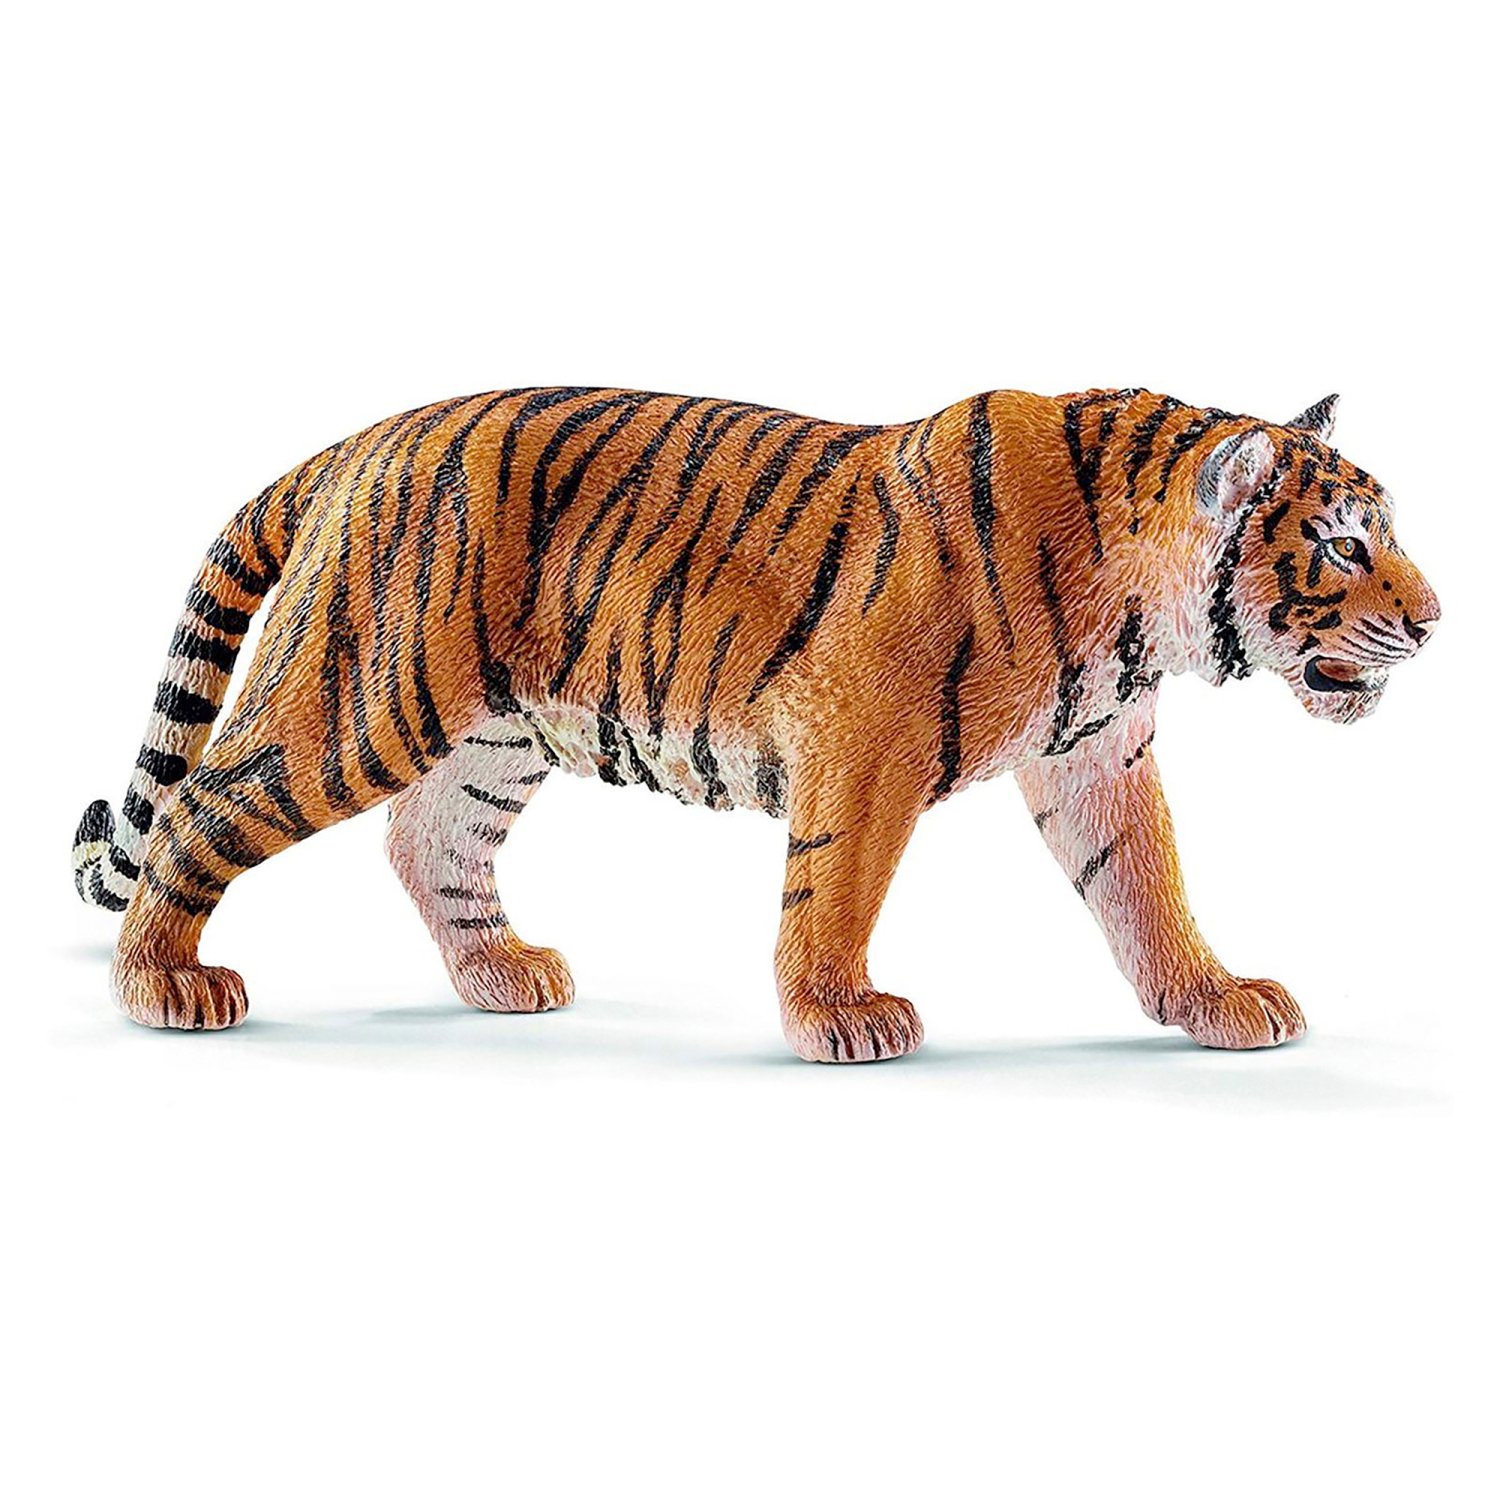 Schleich Spielfigur Tiger 14729 Wild Life